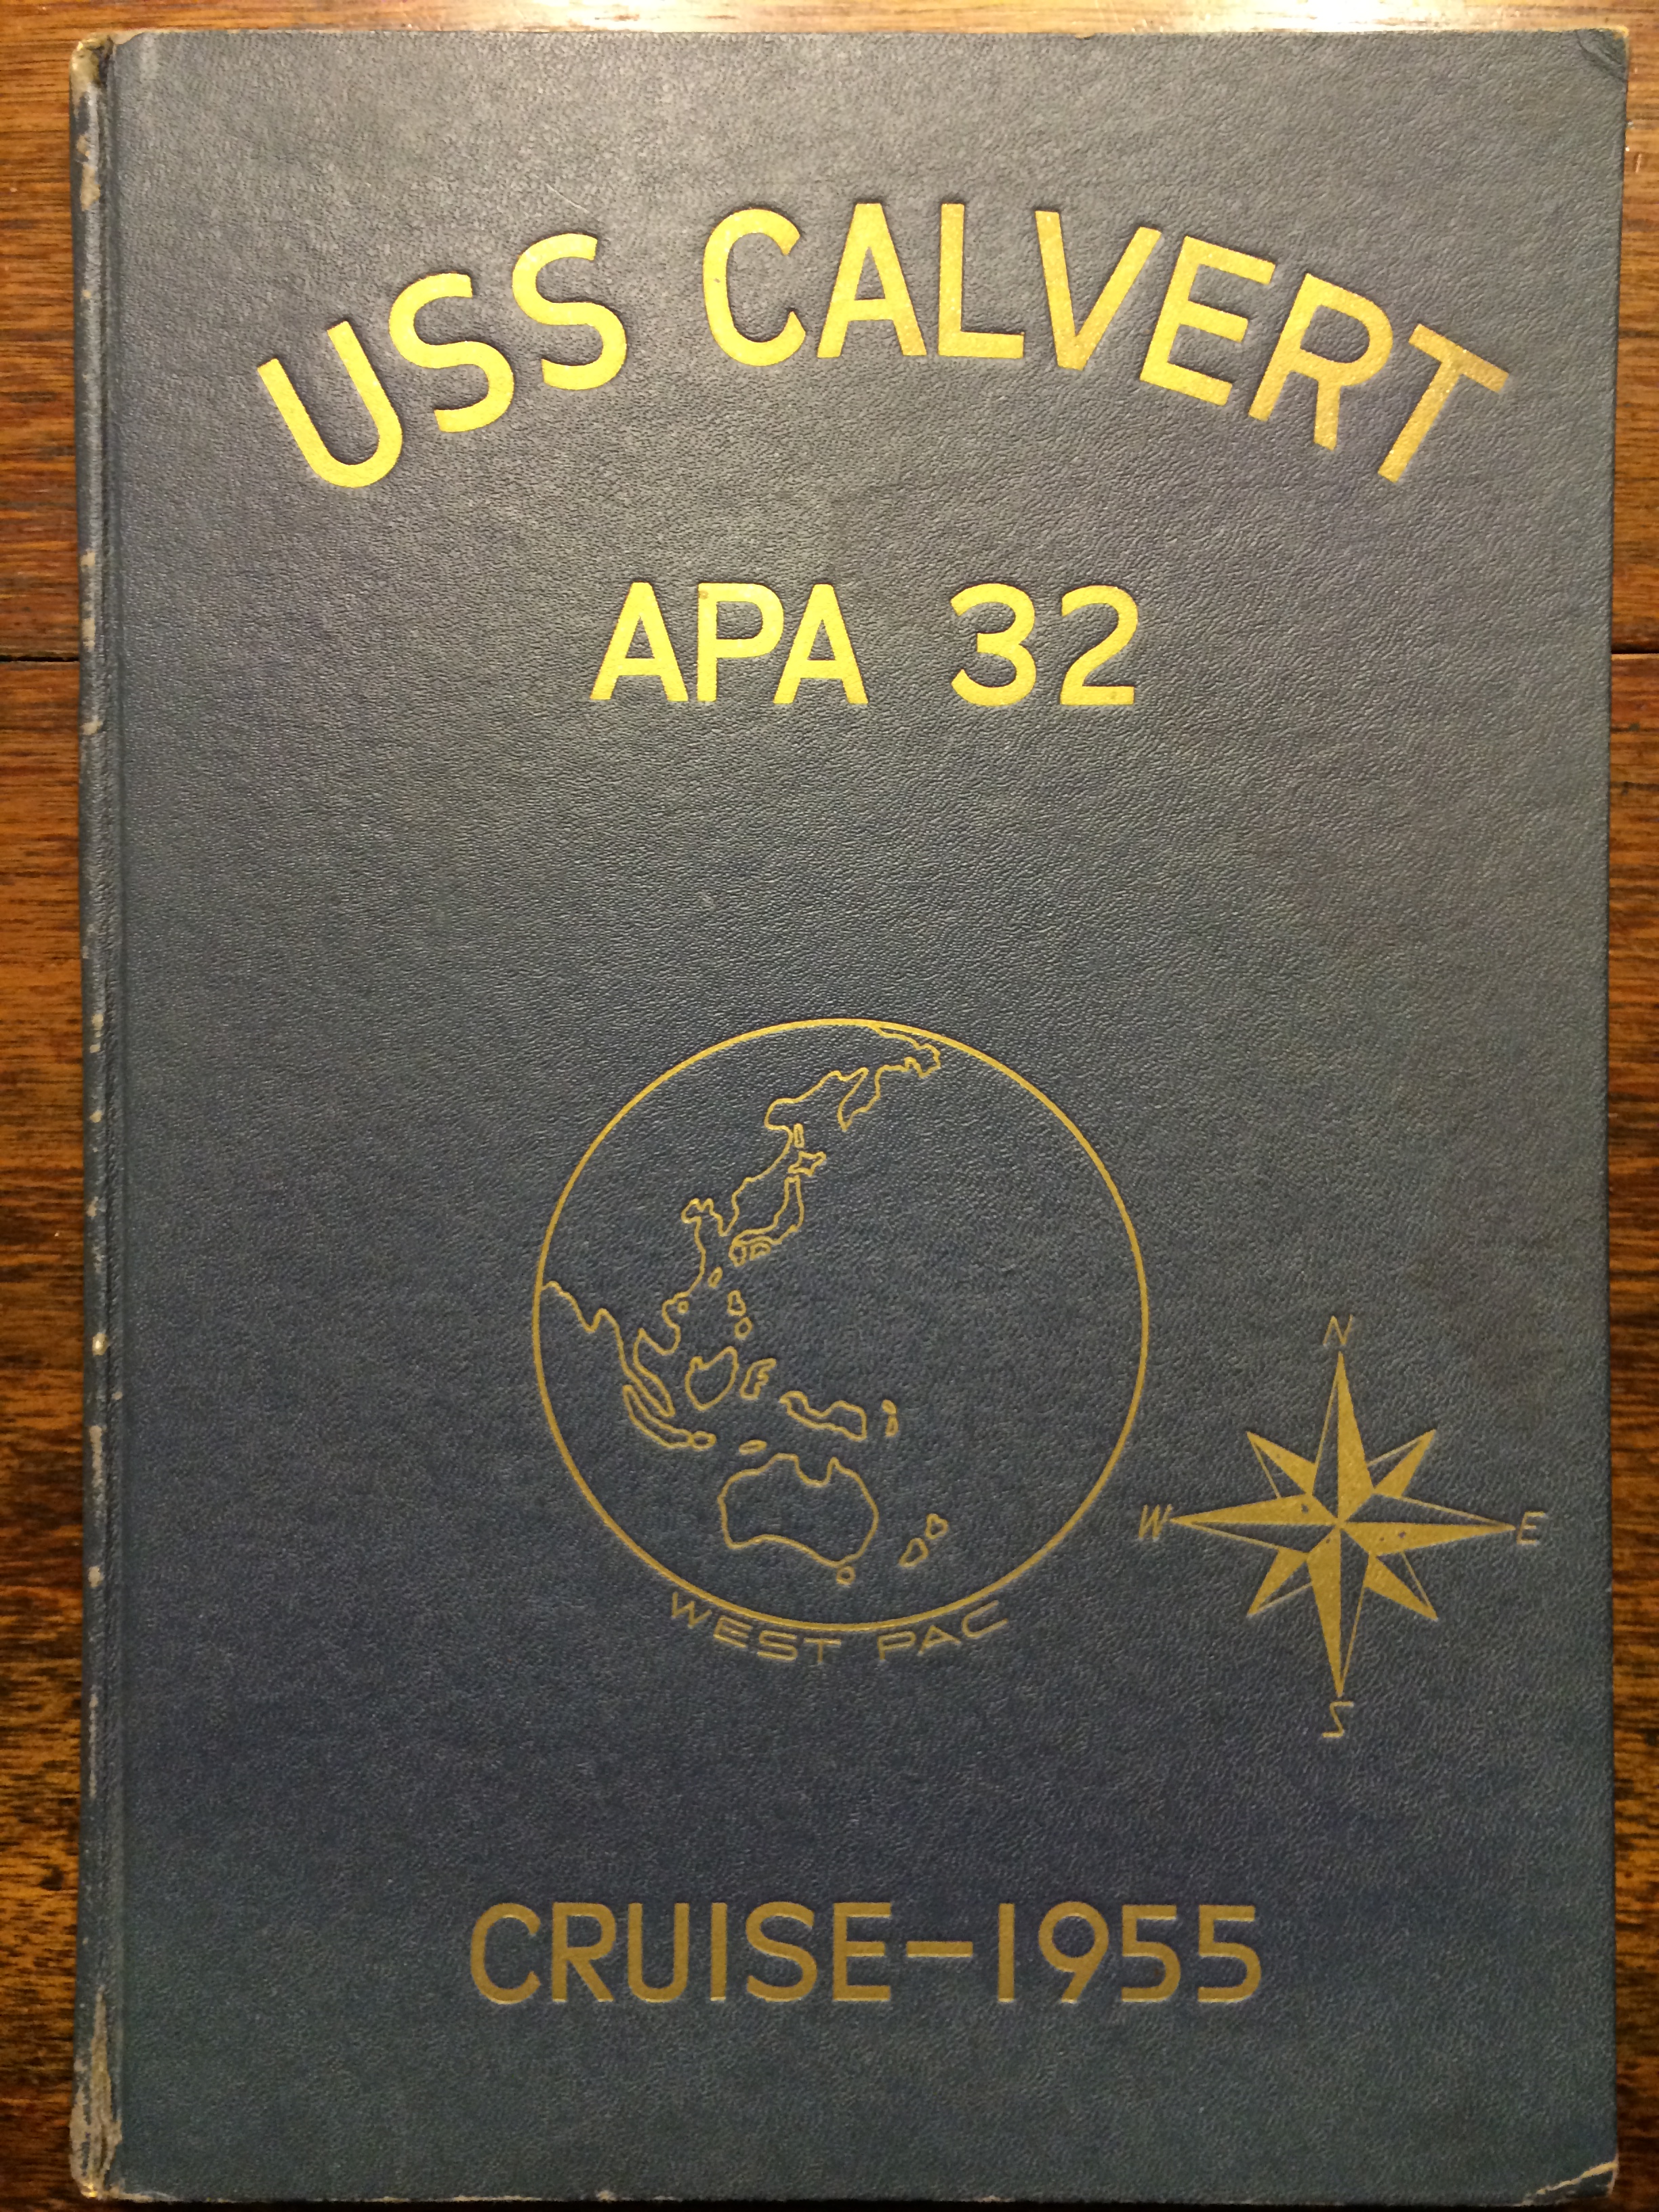 1955 - USS Calvert 5th Far East Cruise - 0001